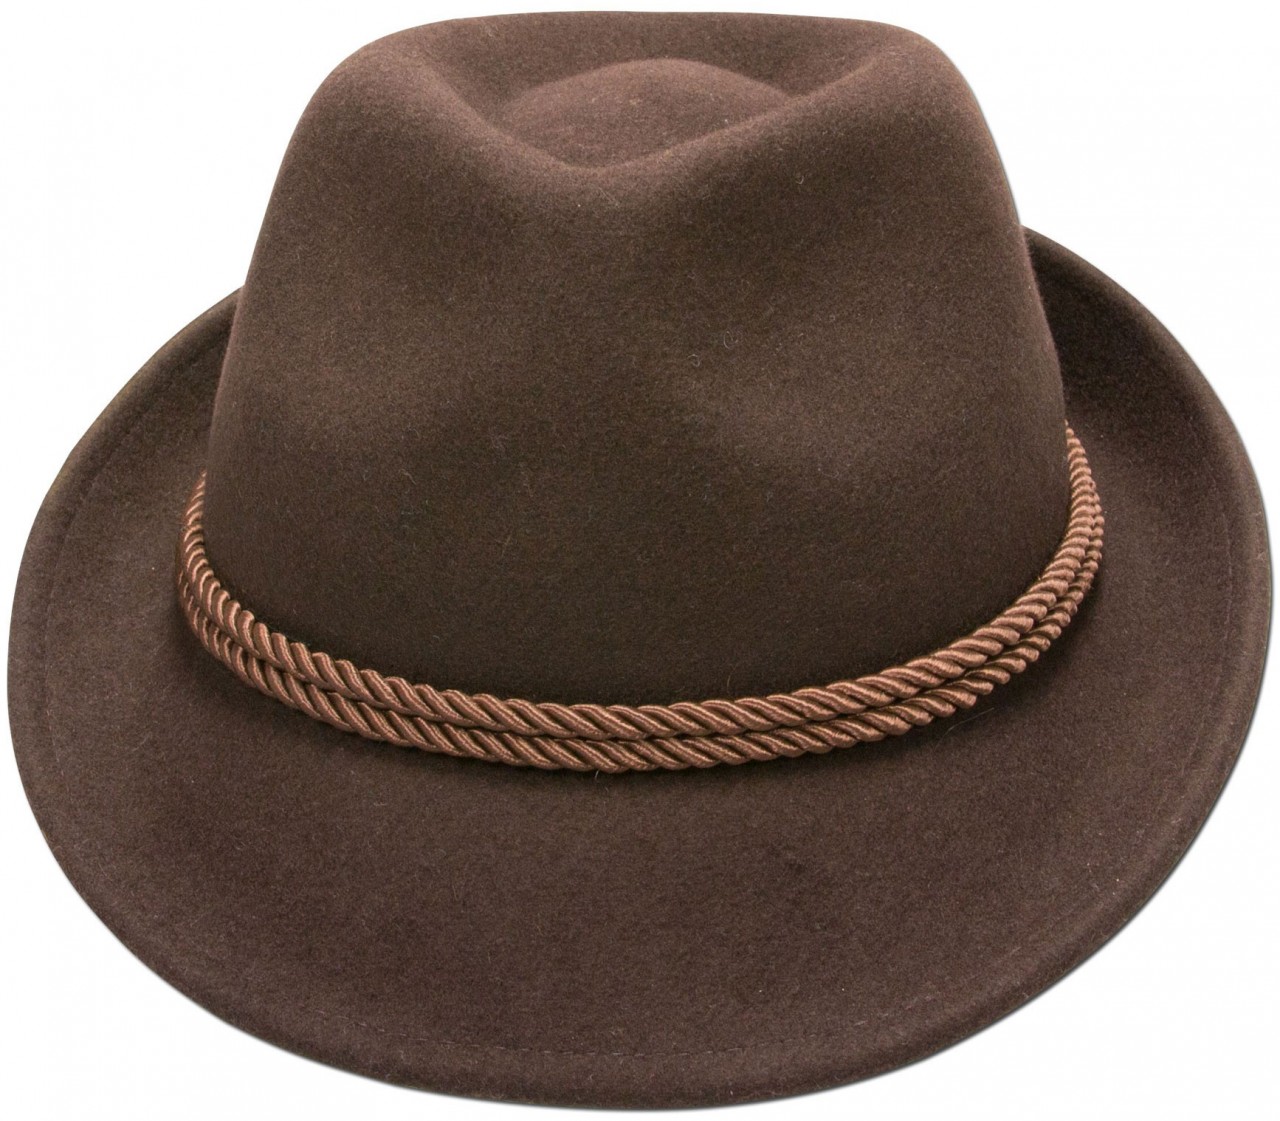 Podgląd: Tradycyjna filcowa czapka z brązowym sznurkiem